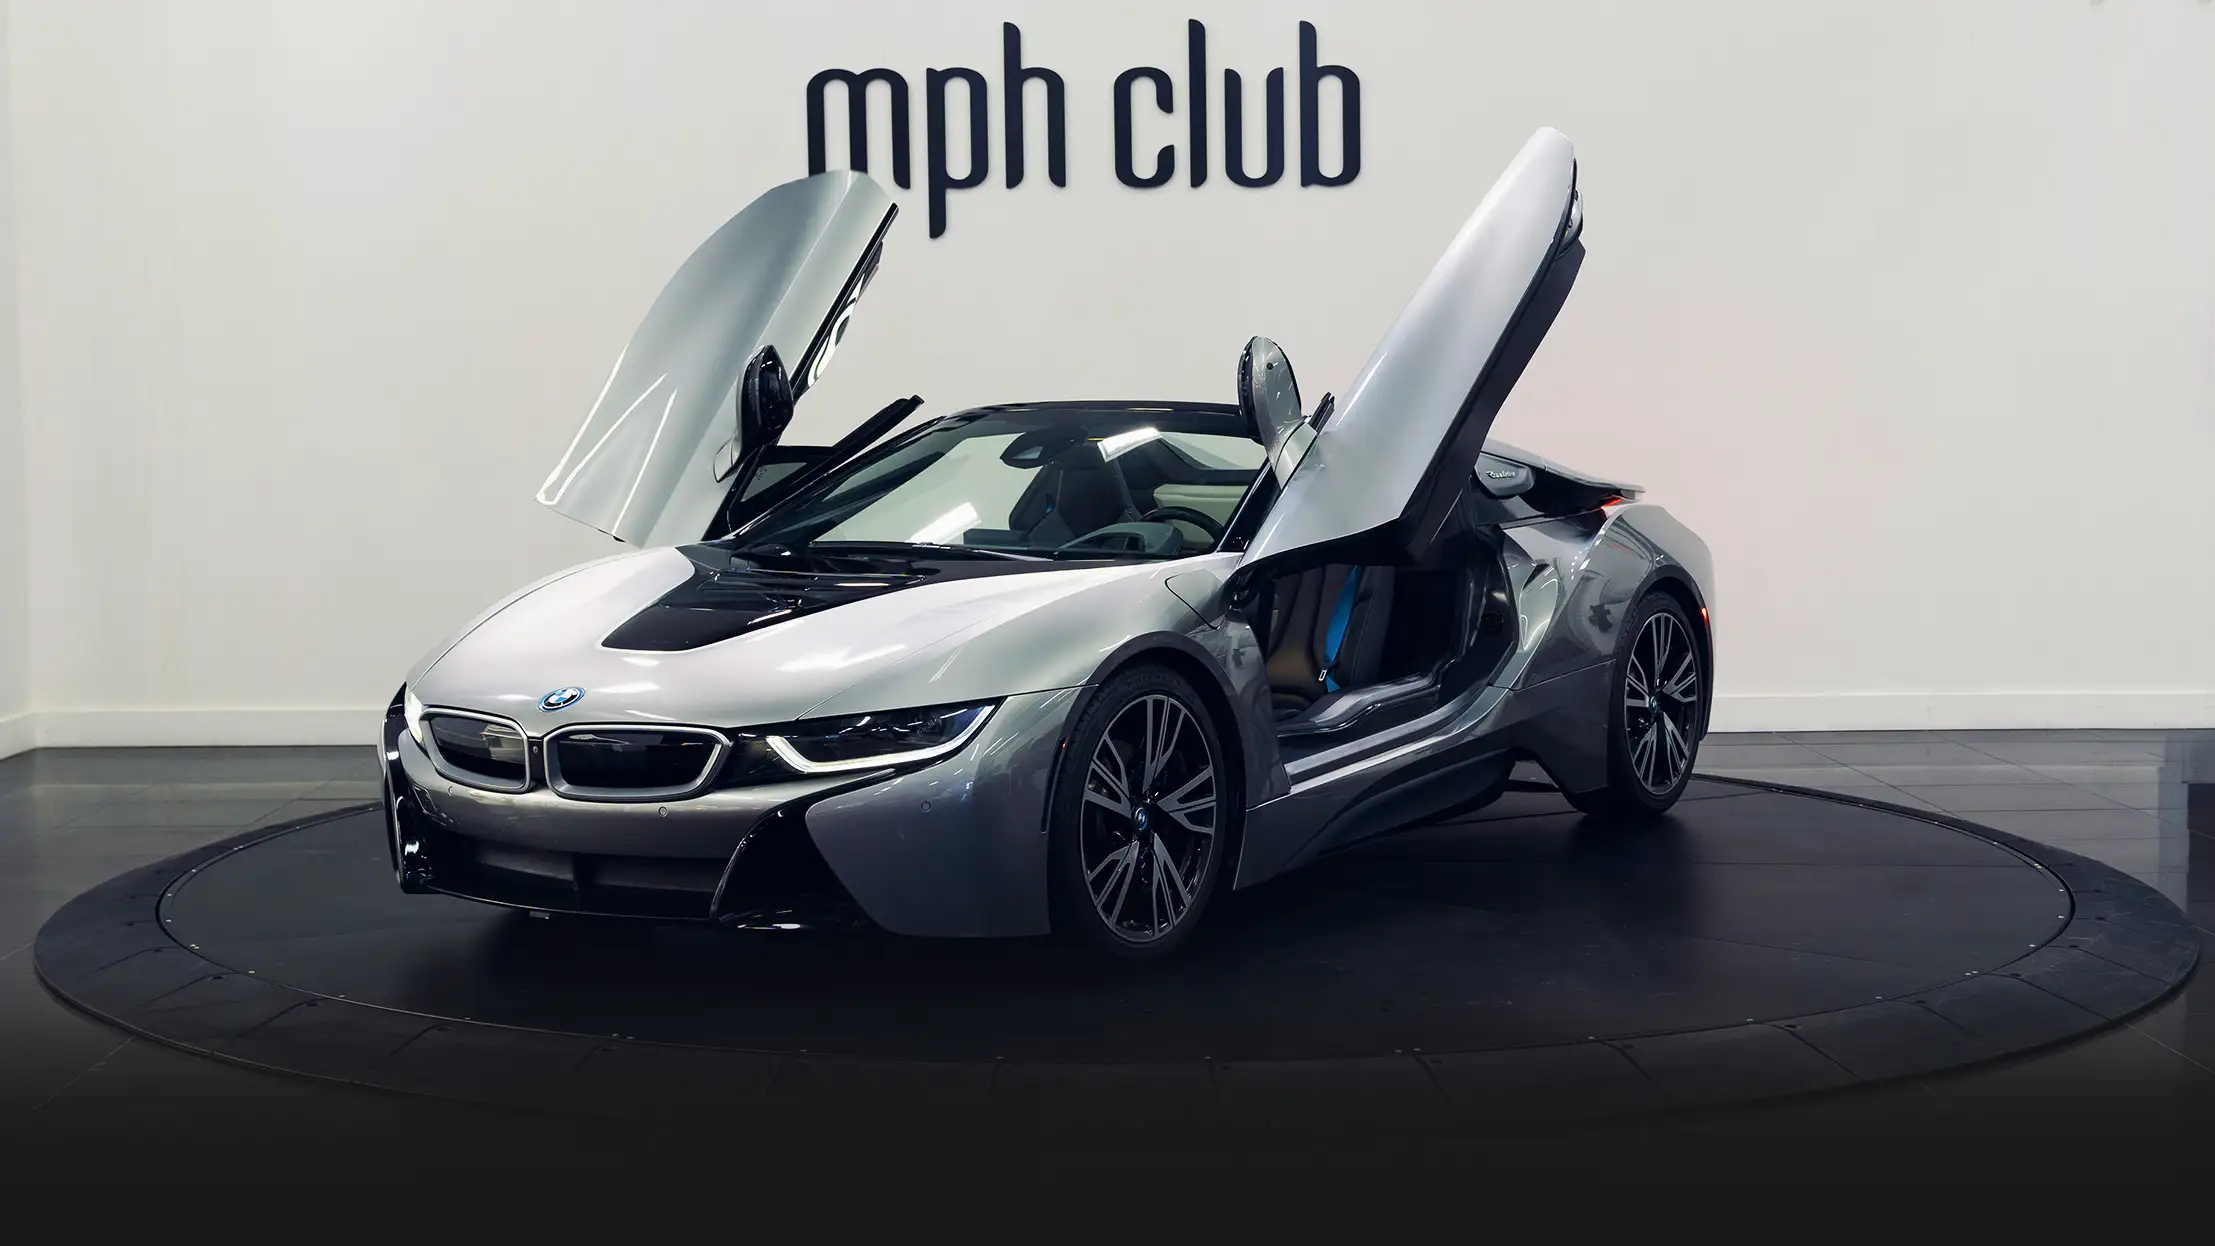 BMW I8 Silver rental profile view - mph club 2